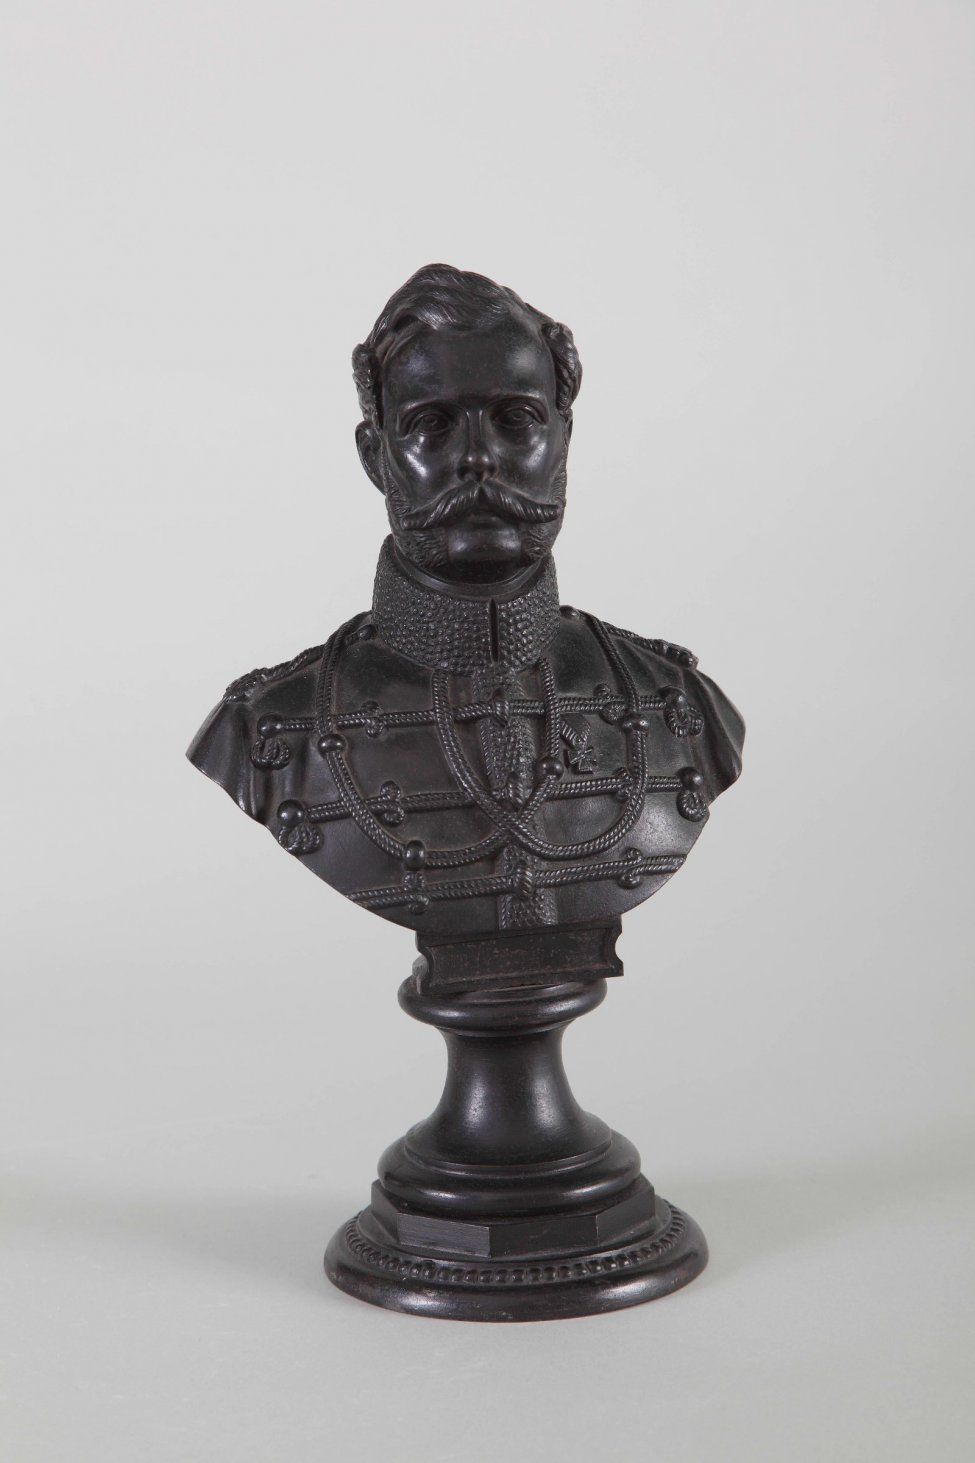 Изображен Александр II с повернутой немного вправо головой. На нем военная форма с меховым воротником. Бюст на постаменте с круглым основанием.